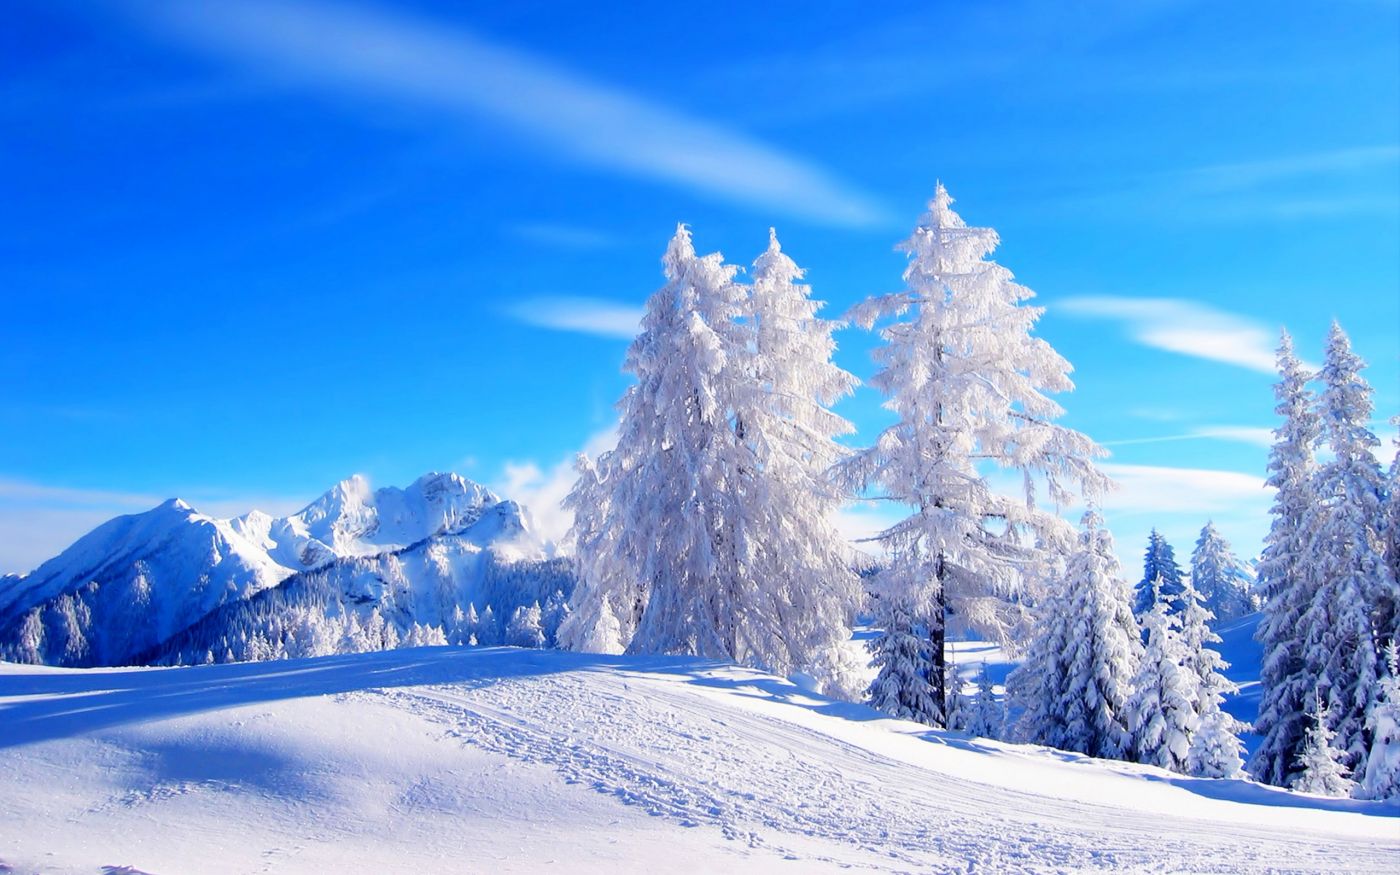 高清晰15最美蓝白冬季雪景自然桌面壁纸下载 欧莱凯设计网 08php Com